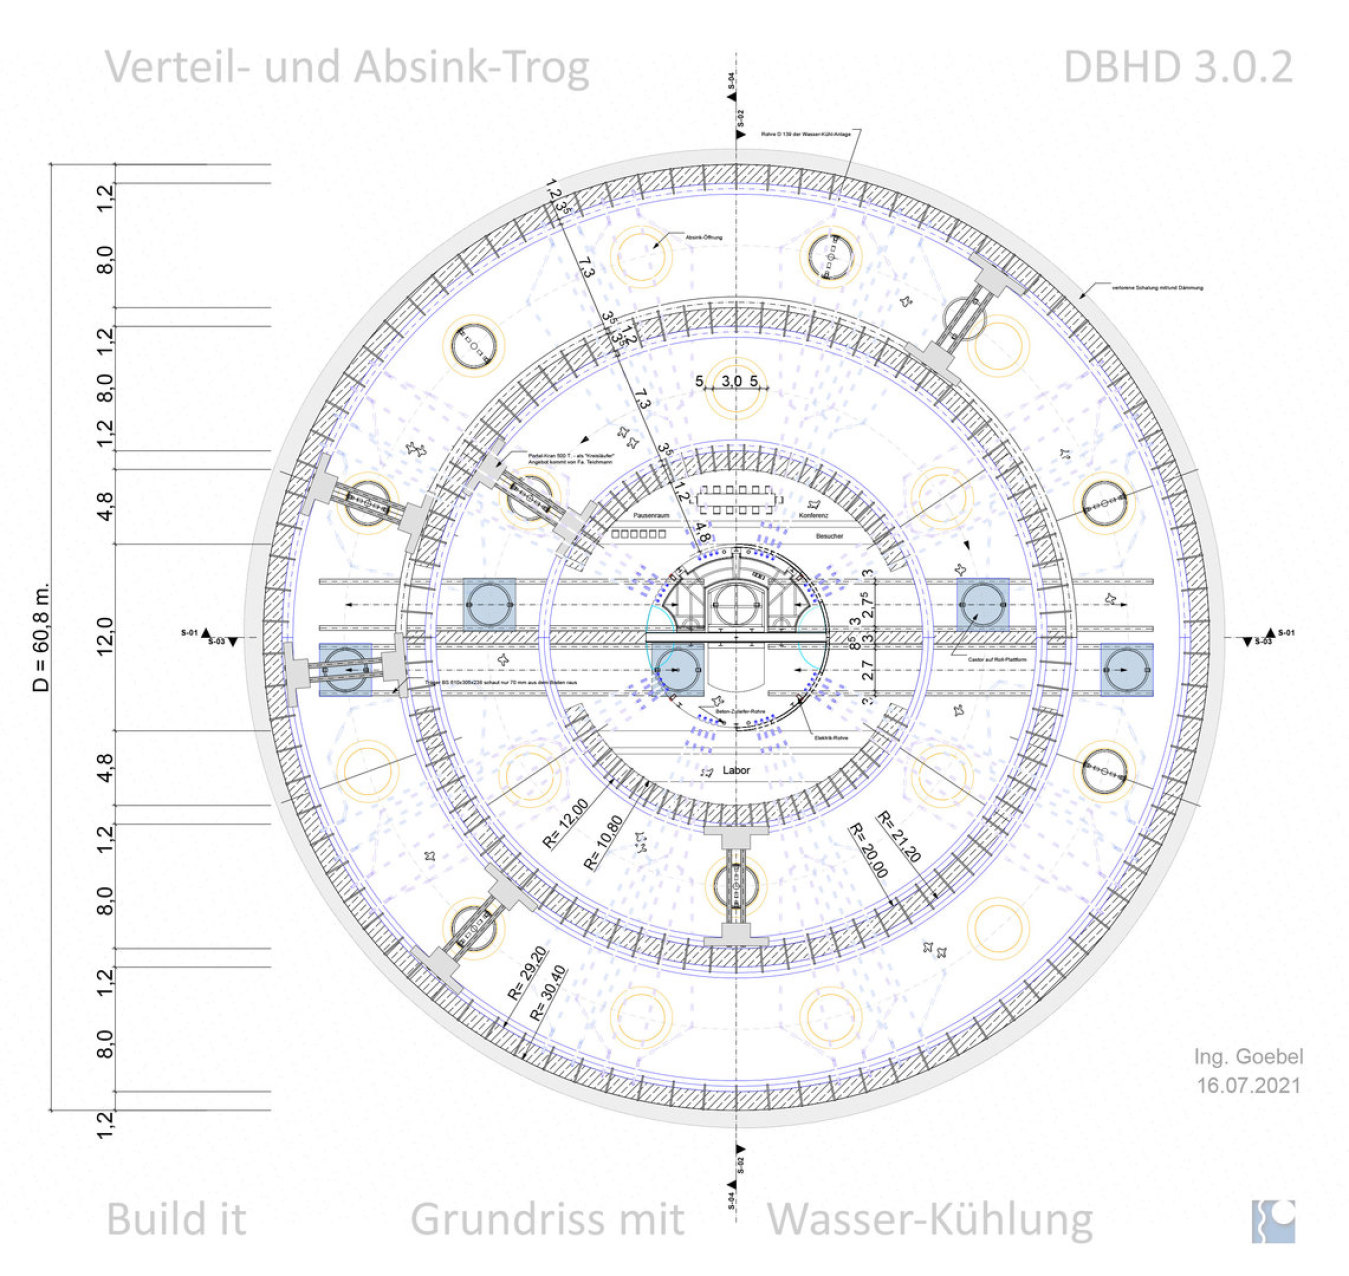 Grundriss Verteil- und Absink-Trog DBHD 3.0.2 unten - 1x mit 1x ohne Wasserkühl-Rohre